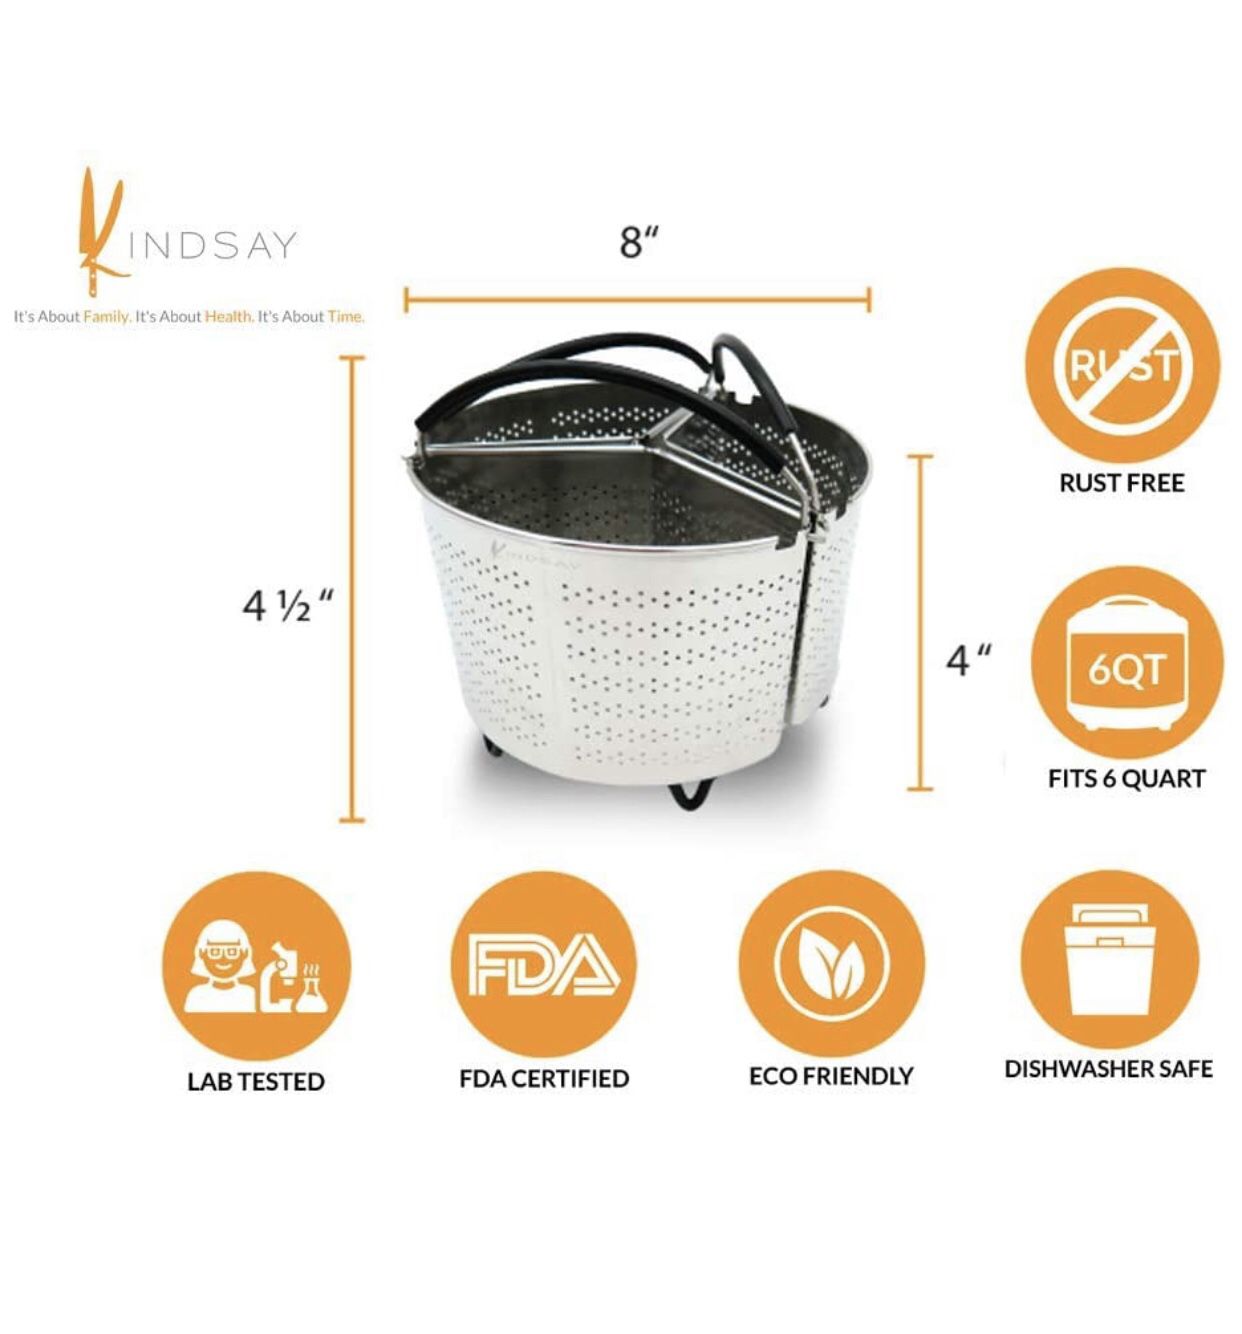 Basket Set Compatible with Instant Pot 6 Qt (NEW)$34